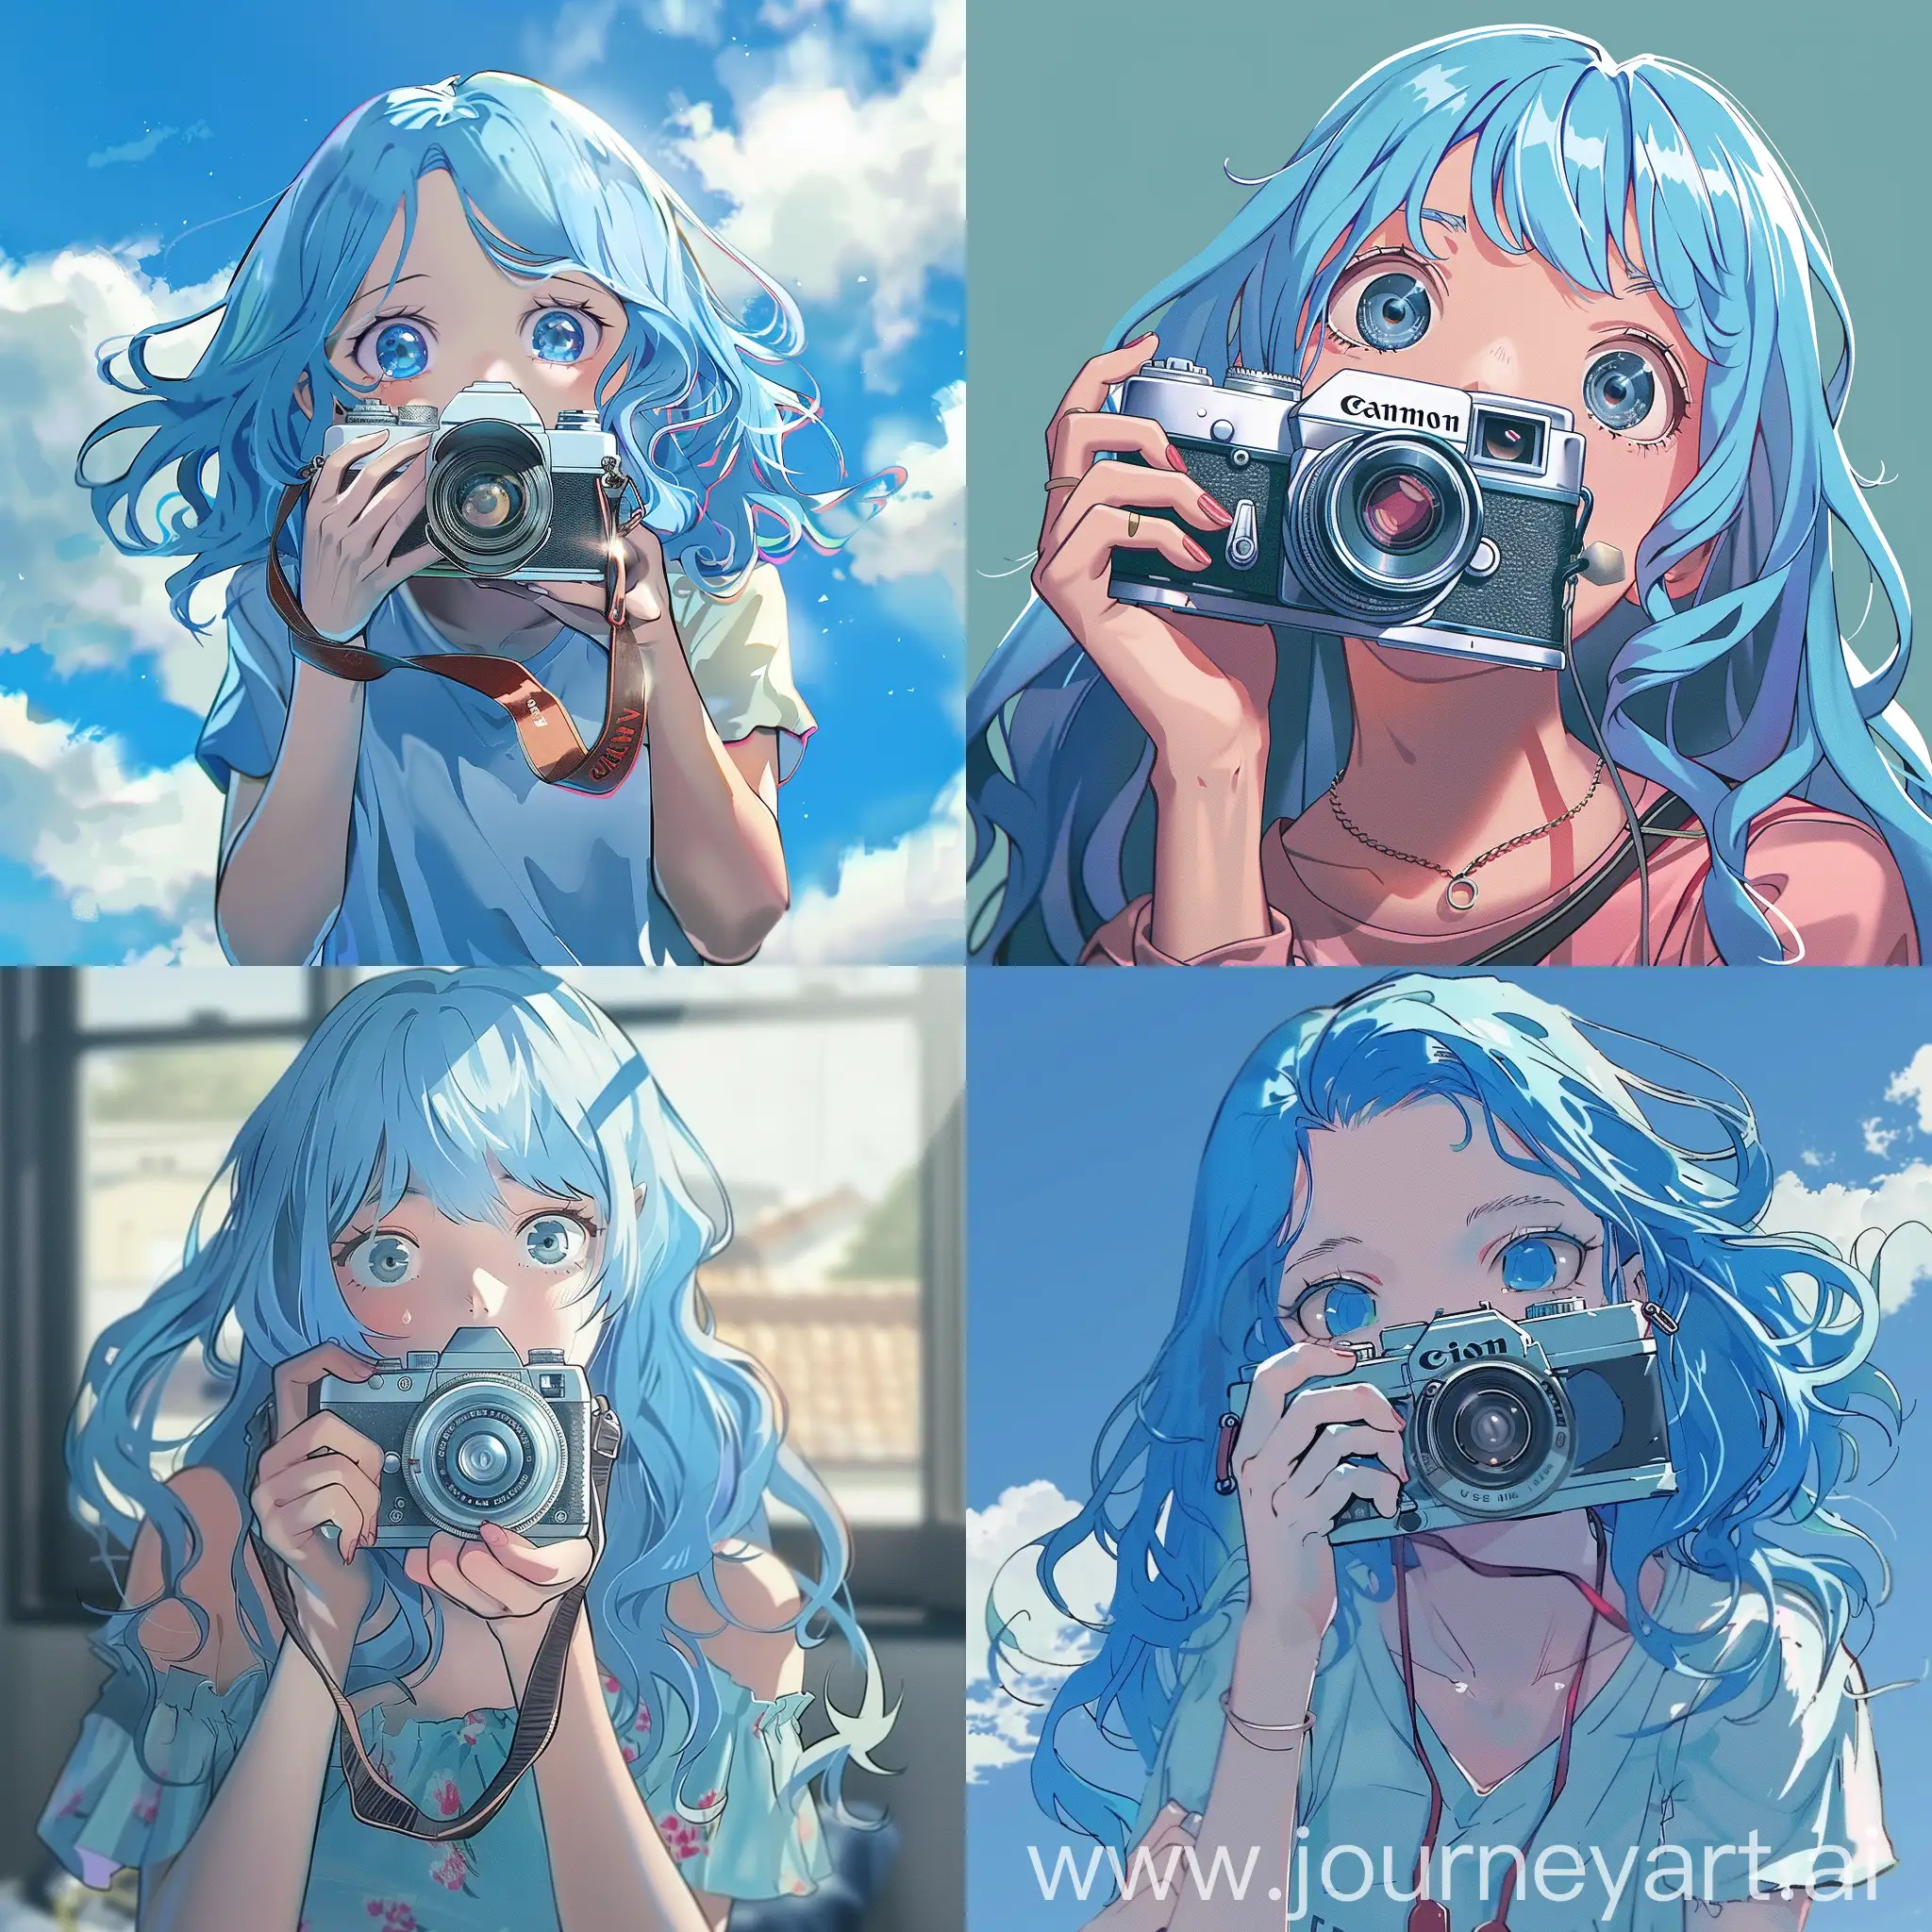 сгенерируй изображение в аниме стиле как девушка с синими волосами держит камеру во рту а камера ее снимает